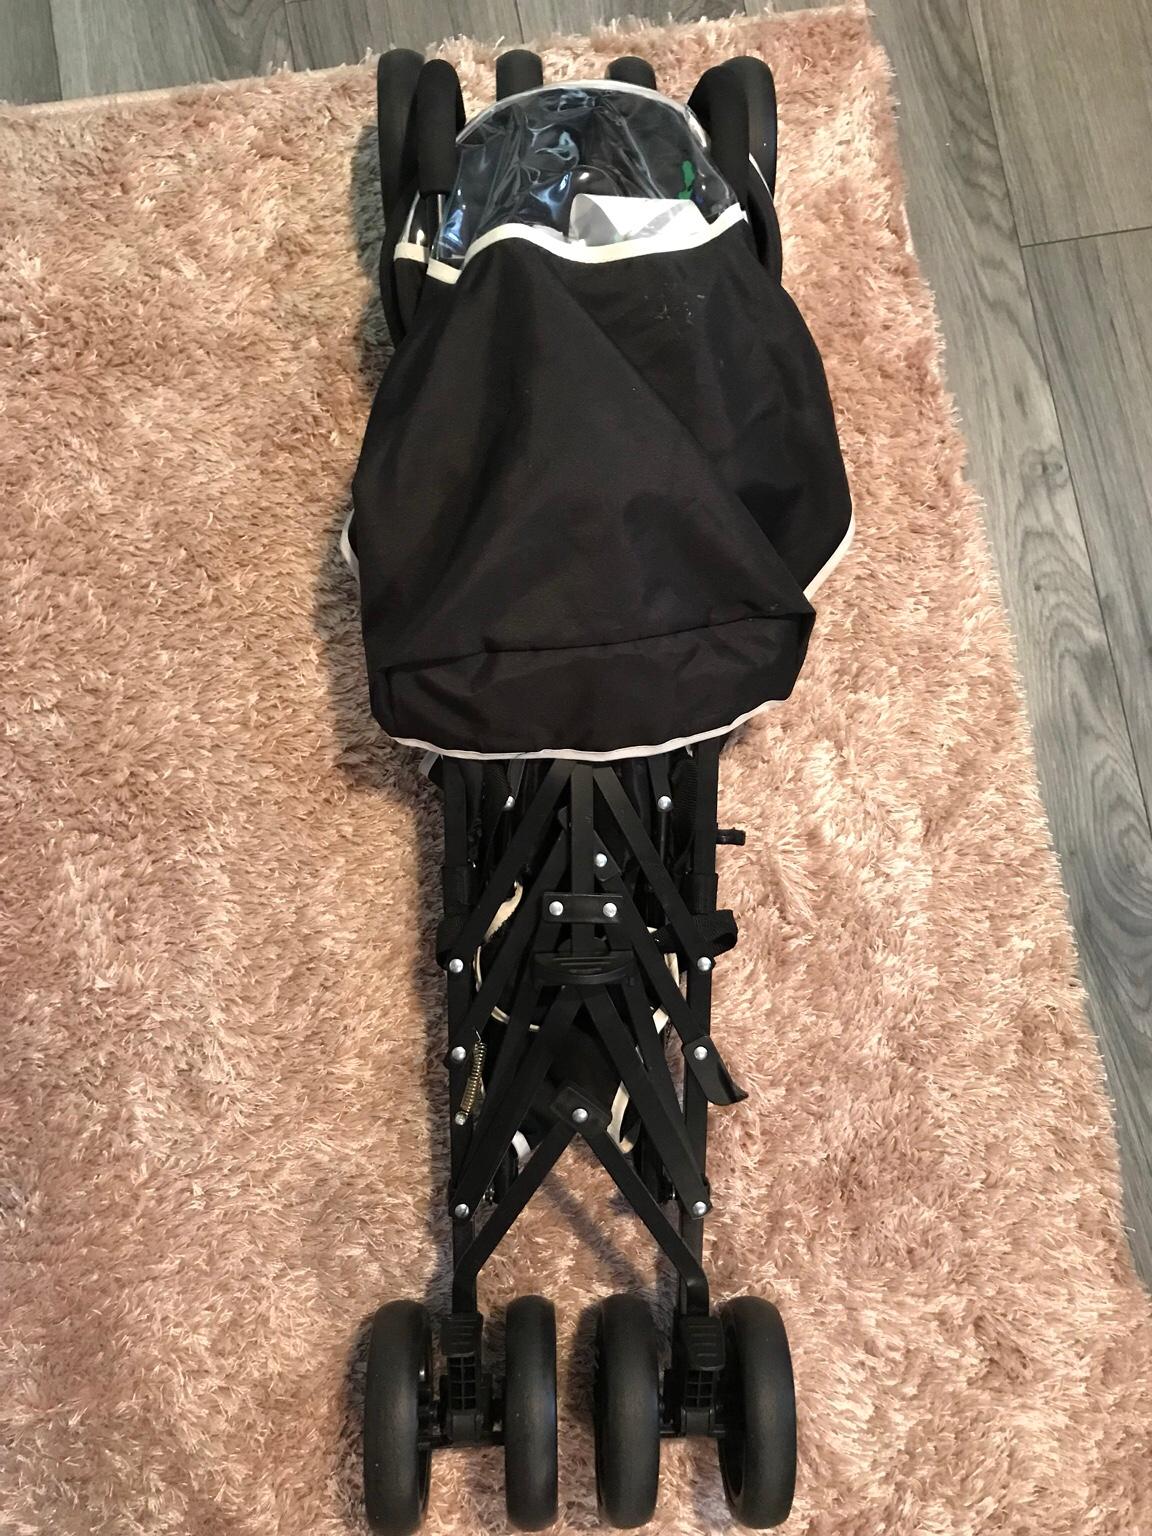 babycore lightweight stroller